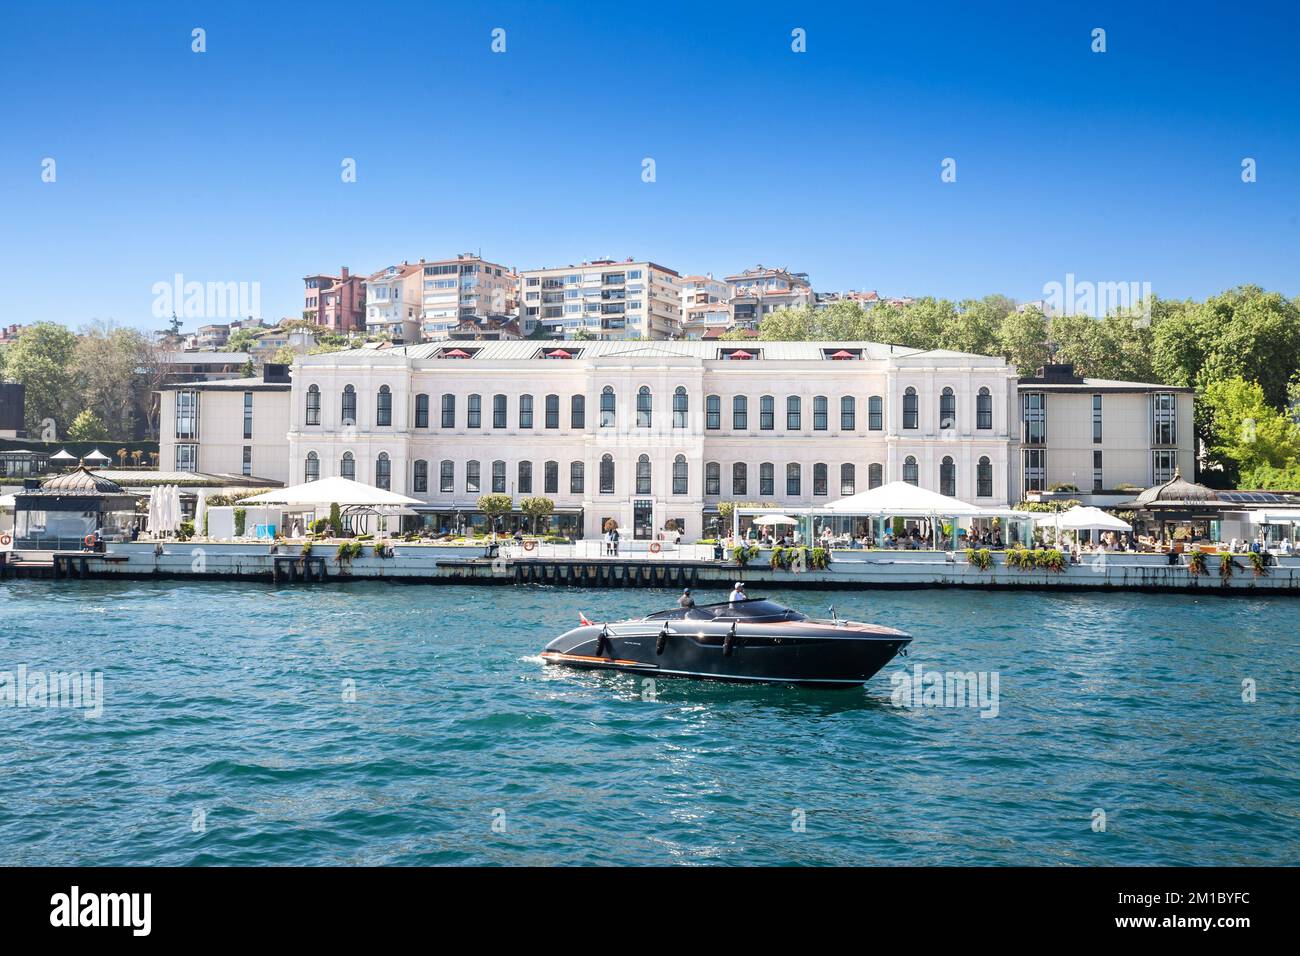 Foto dell'hotel Four Seasons istanbul al bosforo, un hotel di lusso del gruppo Four Seasons sullo stretto del bosforo a Istanbul, Turchia. Foto Stock